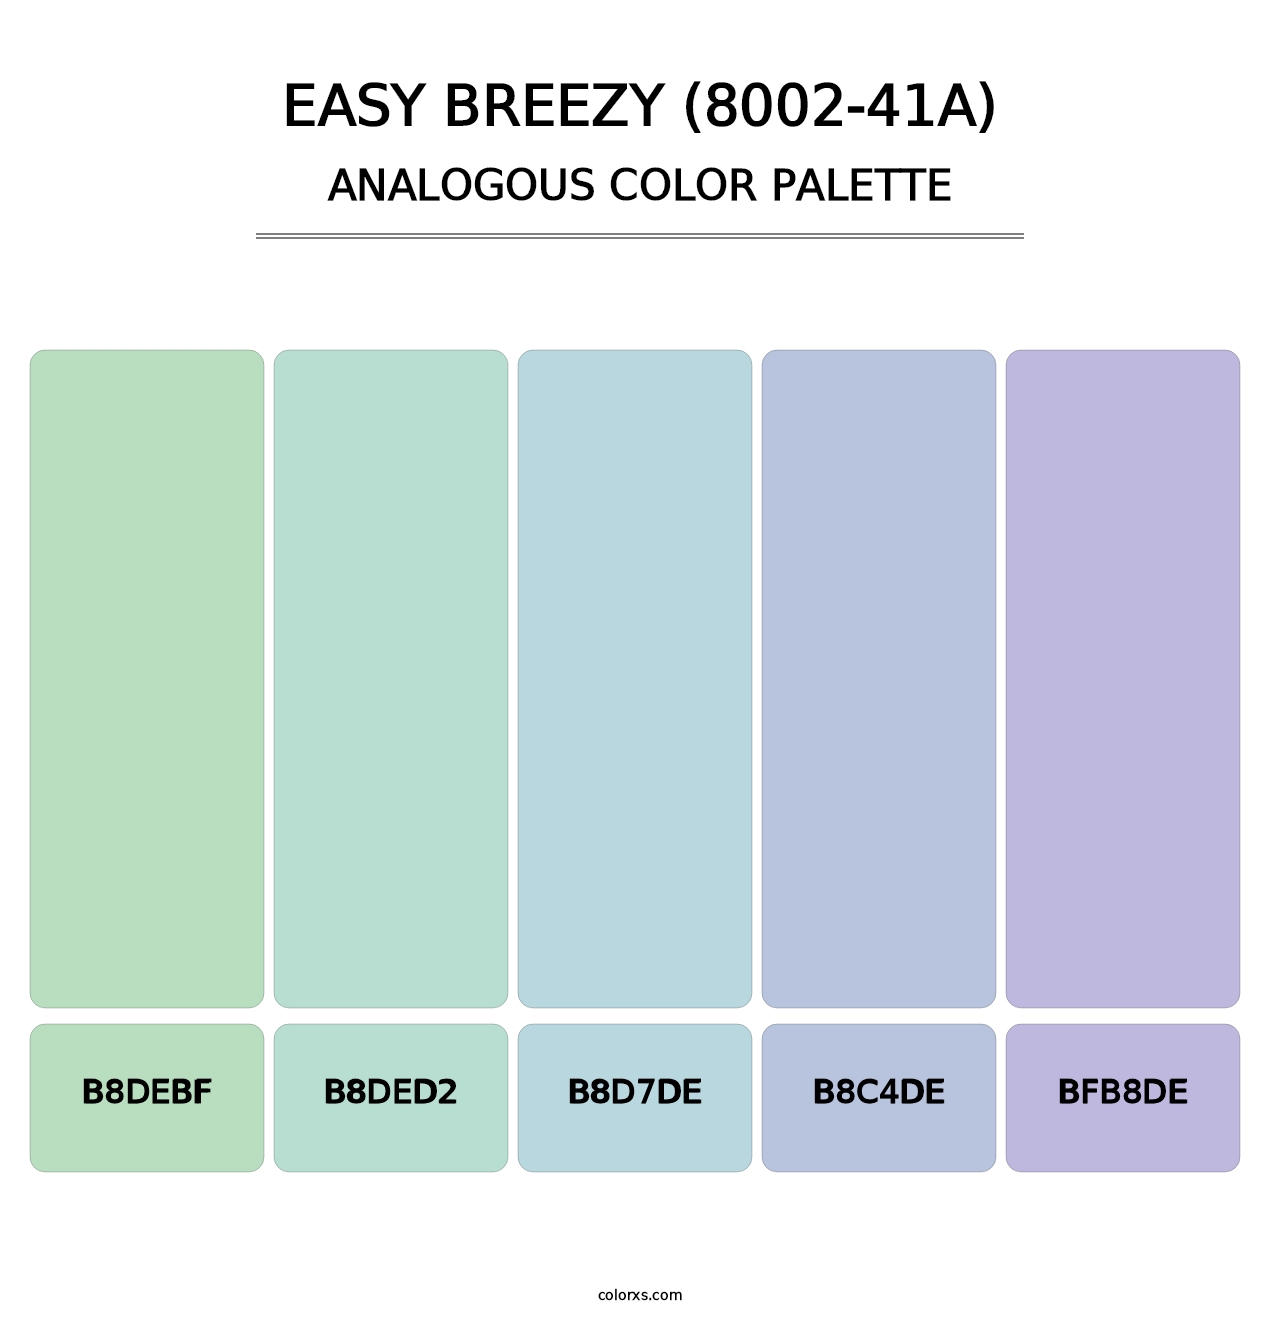 Easy Breezy (8002-41A) - Analogous Color Palette